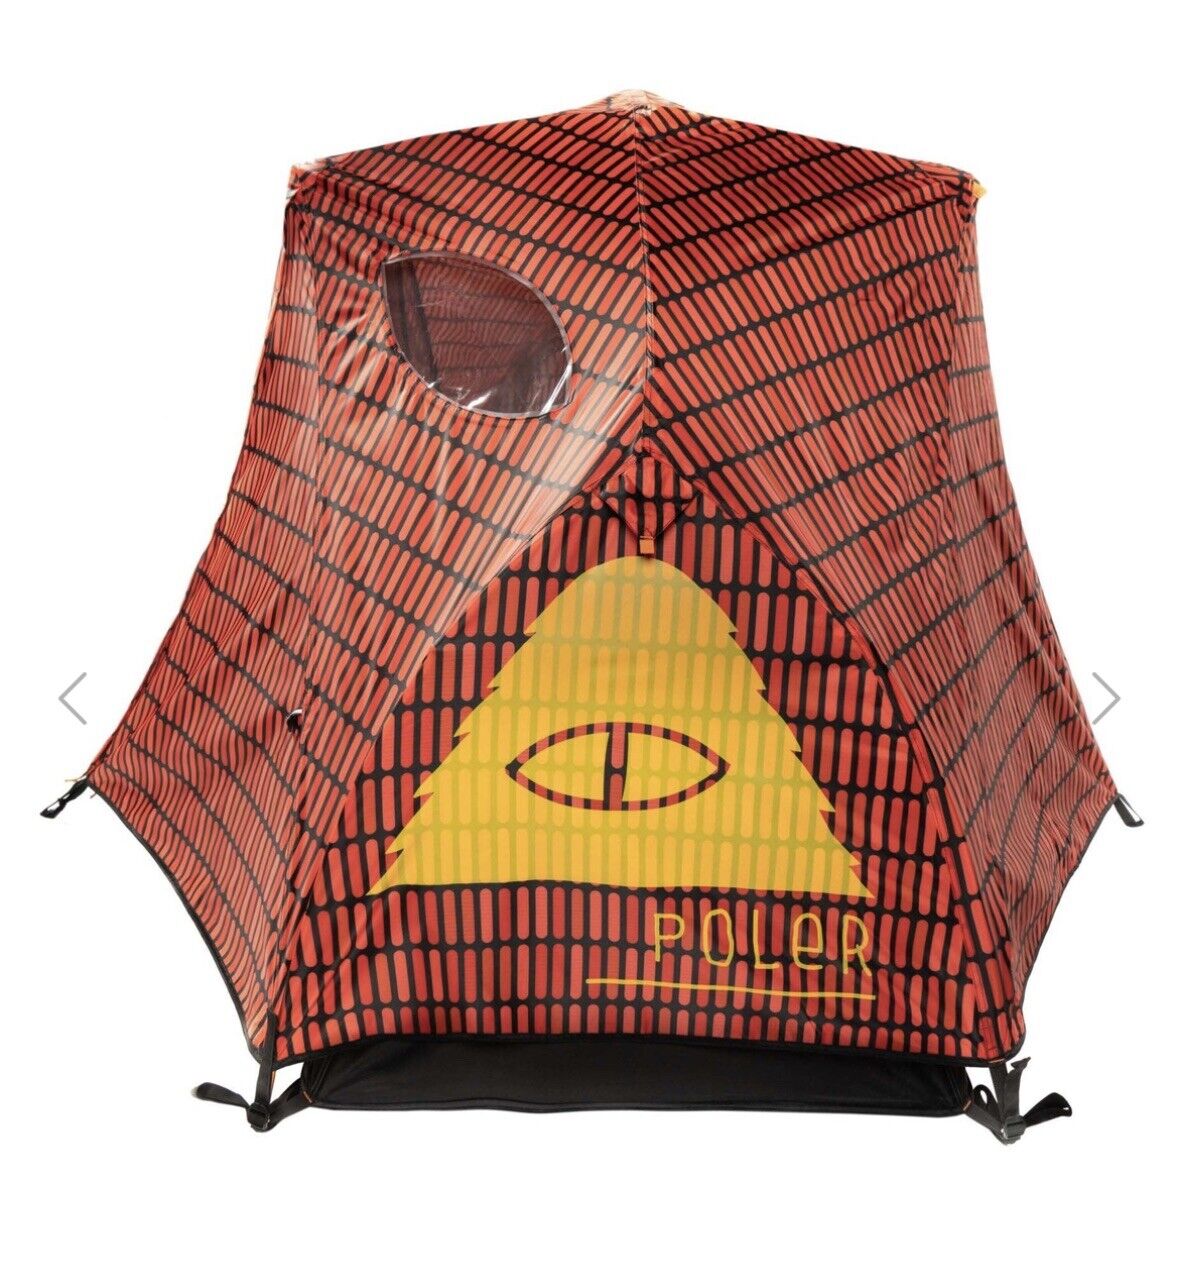 アウトドア テント/タープ Brand New Poler 1-Person Tent - Color: Hal - | eBay